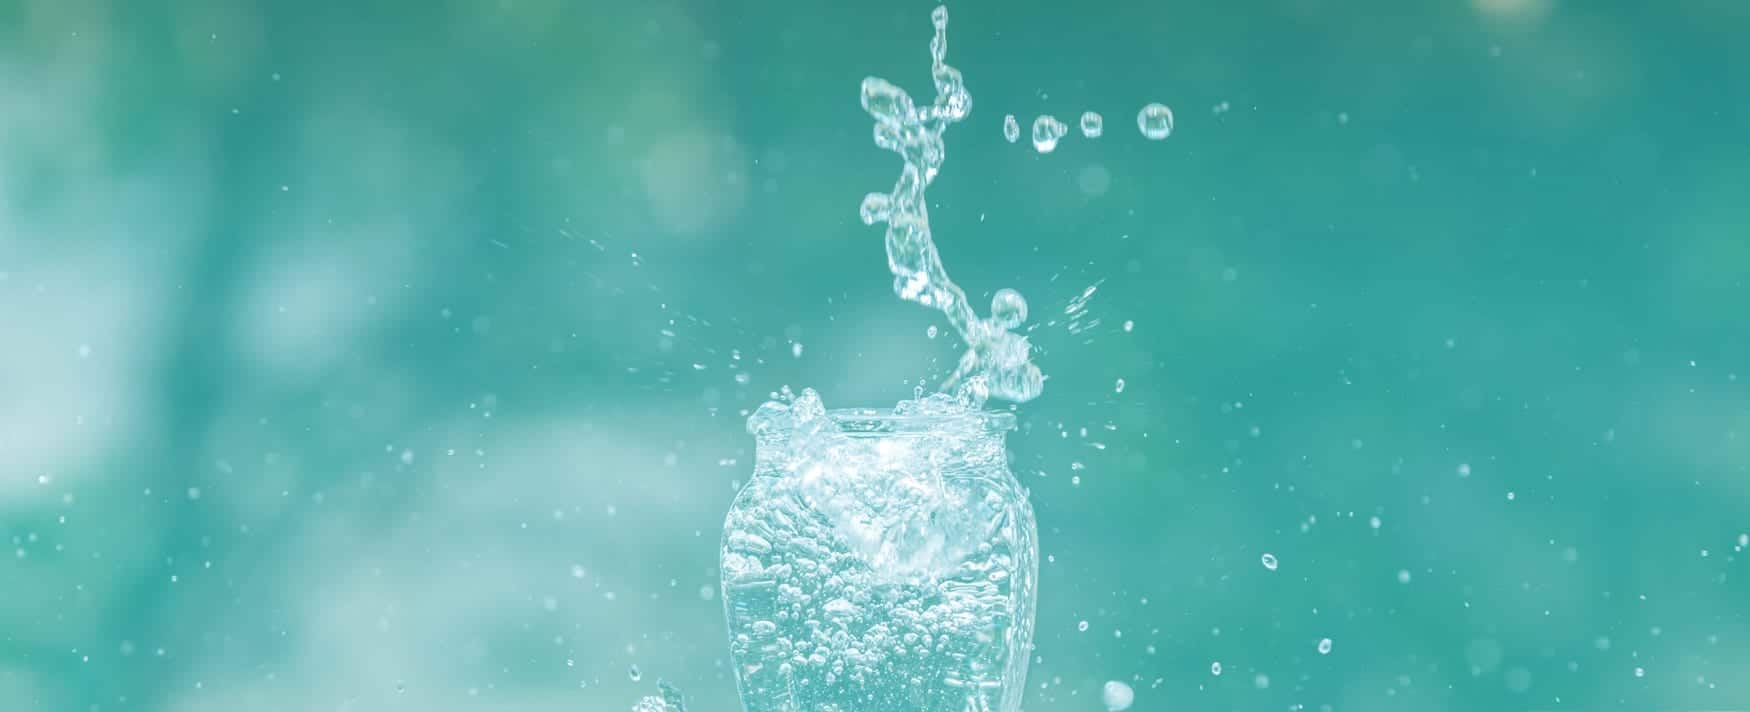 Agua en un vaso